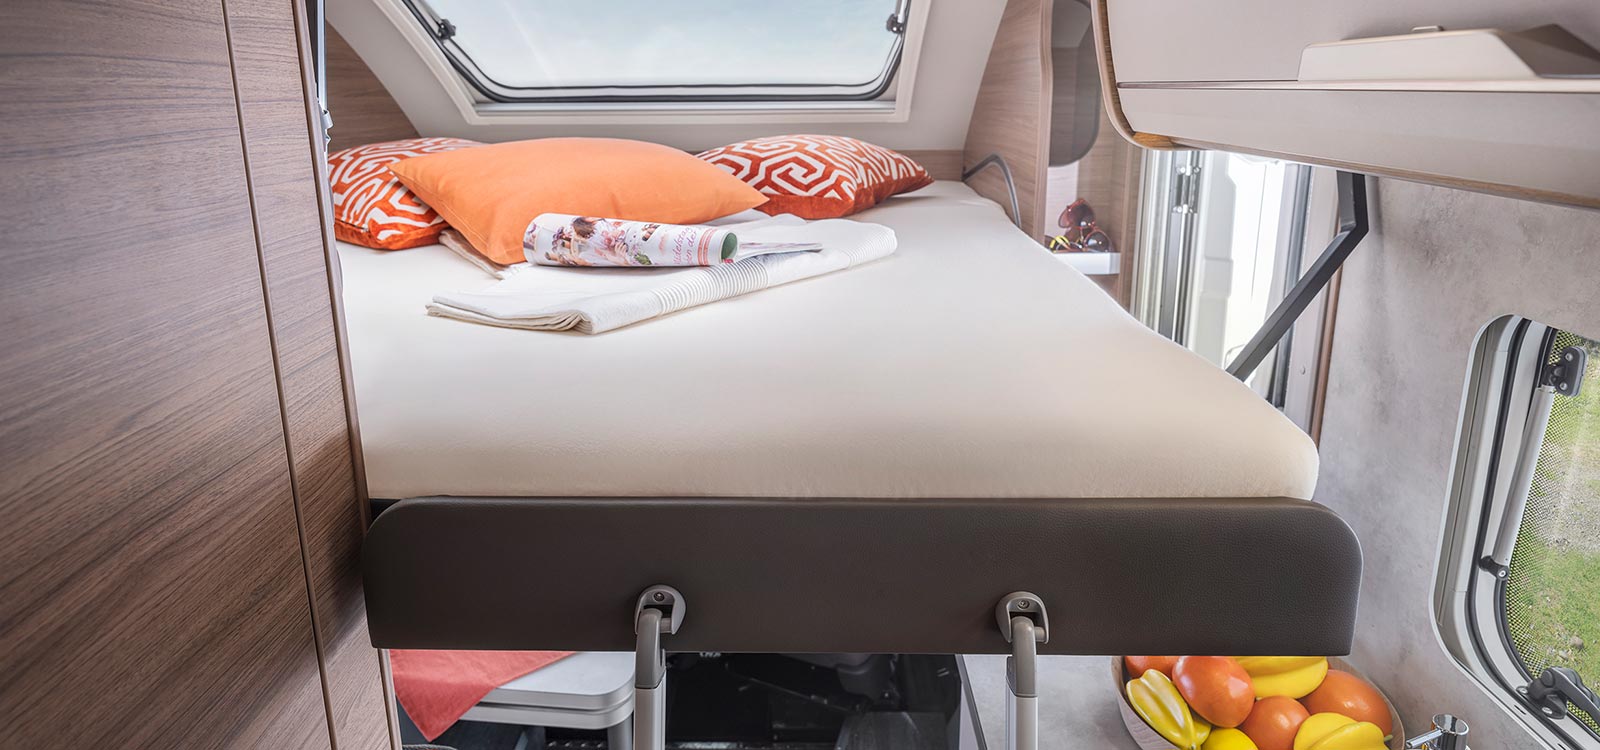 KNAUS TOURER VAN mit ausziehbaren Slide-Bett das Platz für zwei weitere Personen bietet 